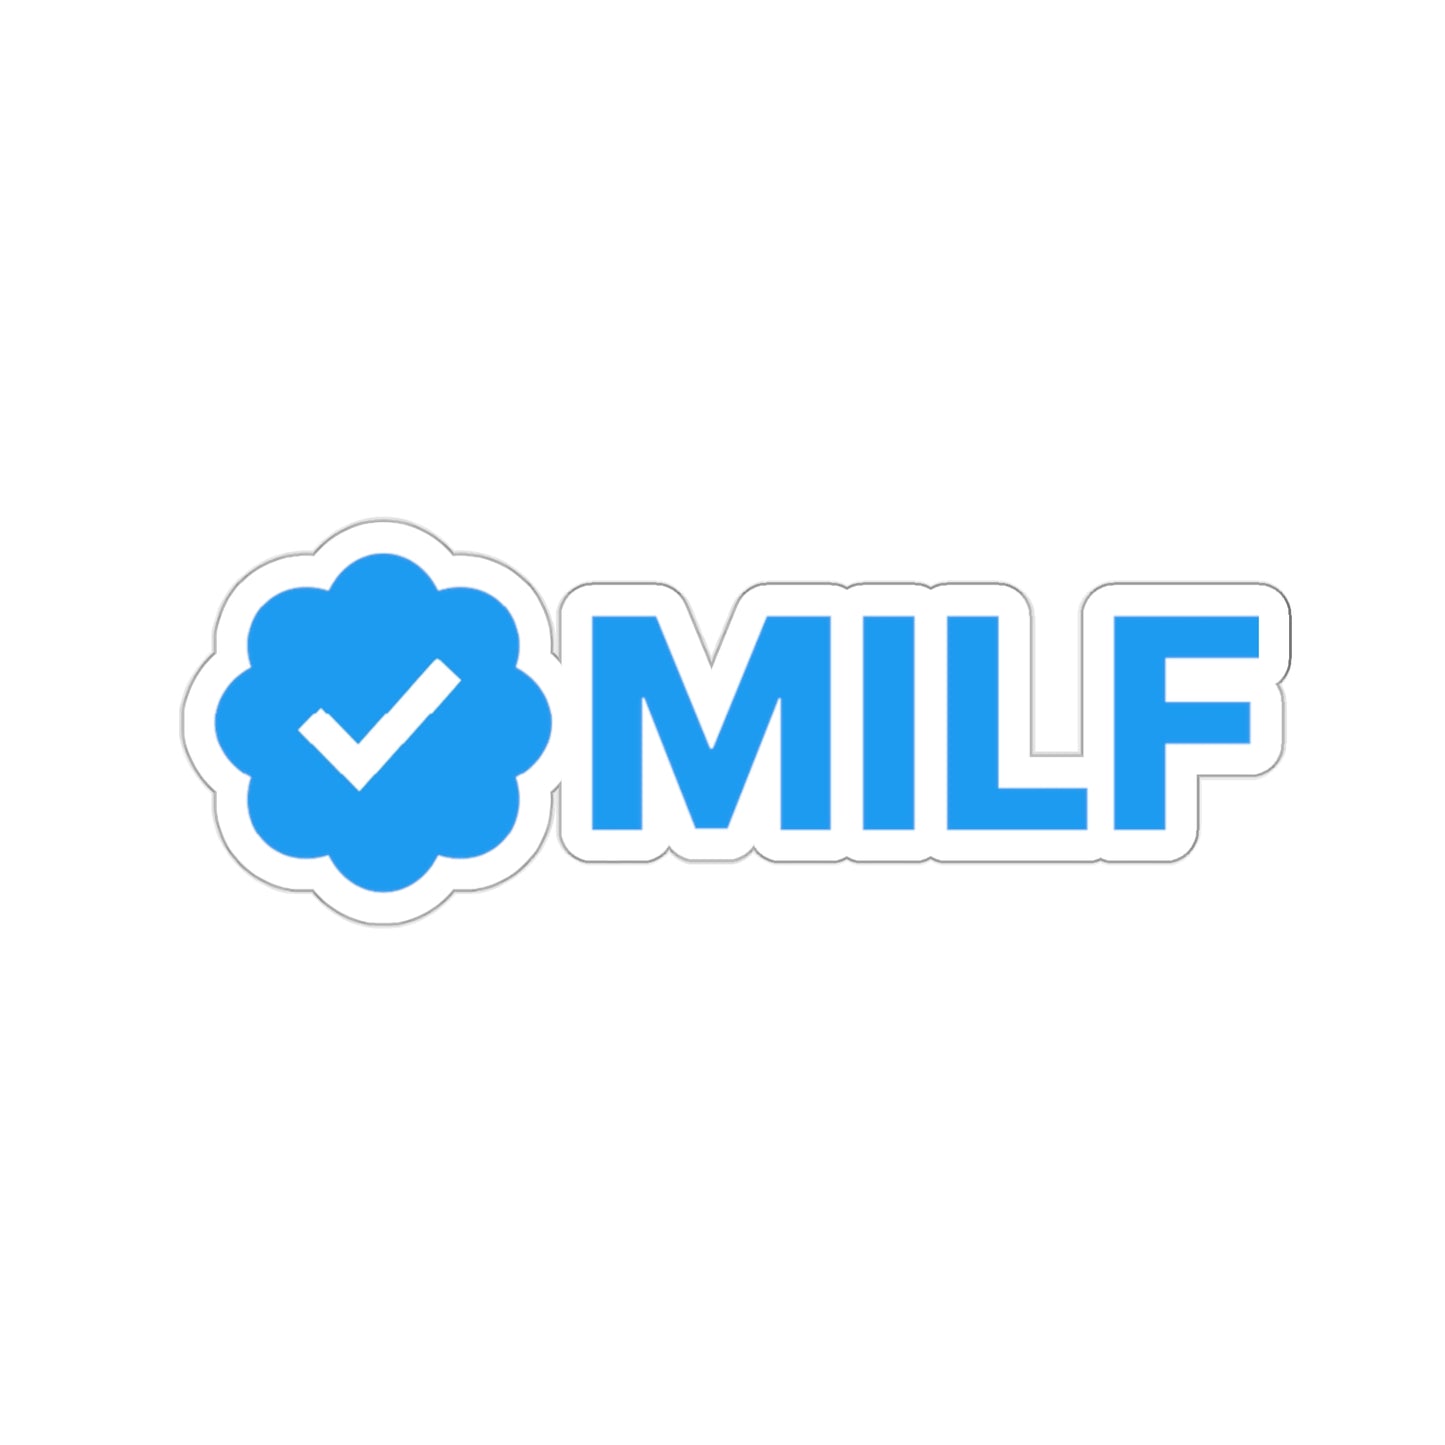 Verified MILF, Certified MILF, Meme Sticker